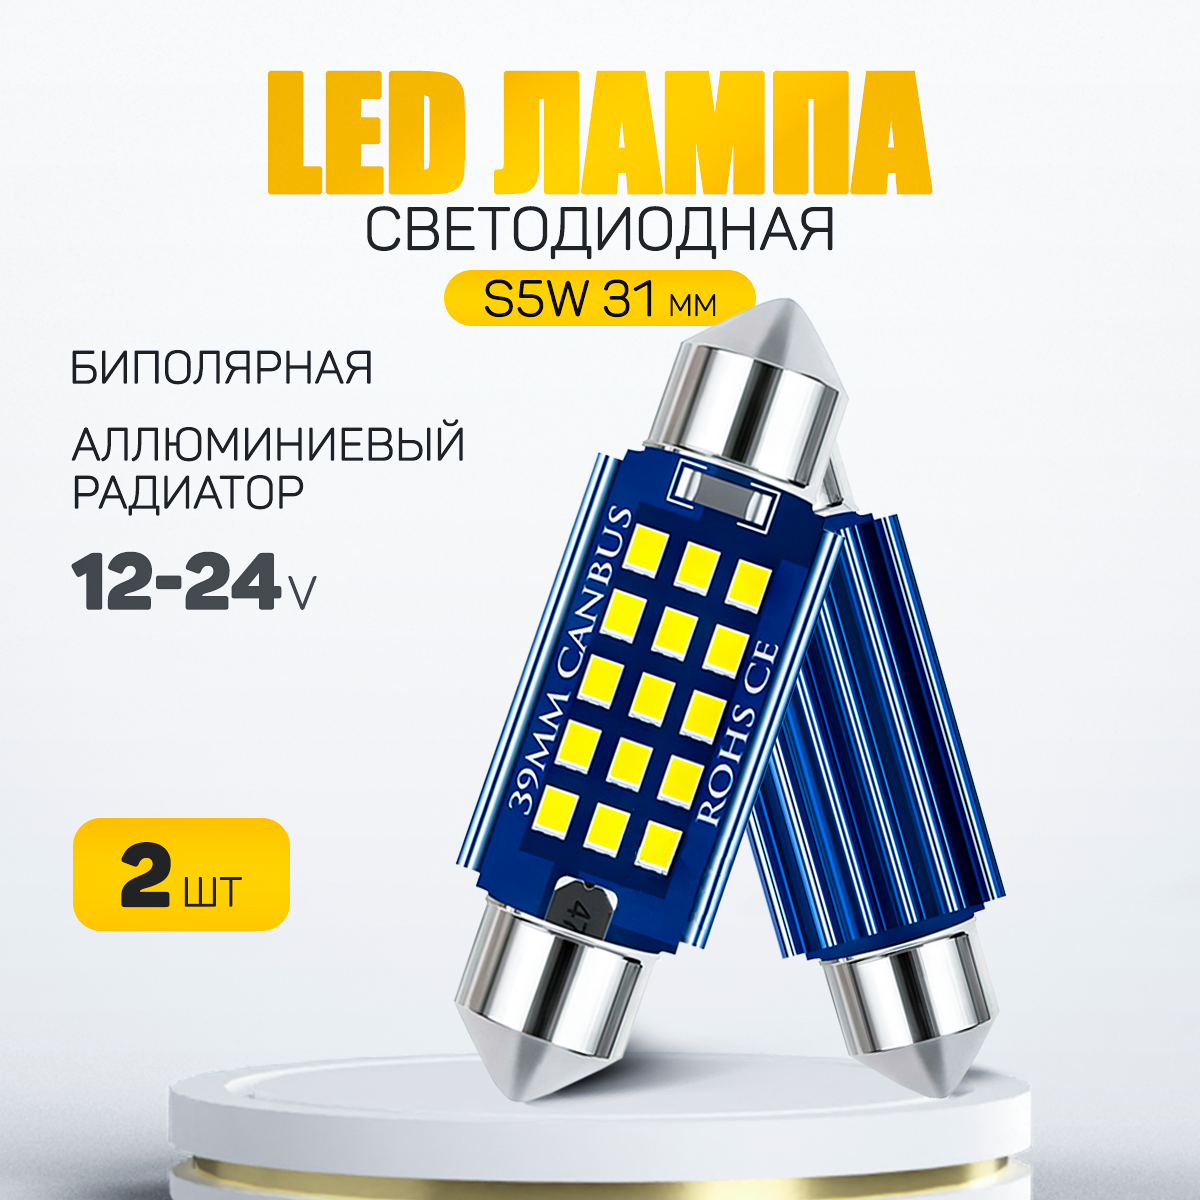 Светодиодная лампа C5W LED 31mm для подсветки салона, багажника, номерного знака, с обманкой 12V (2 шт.)